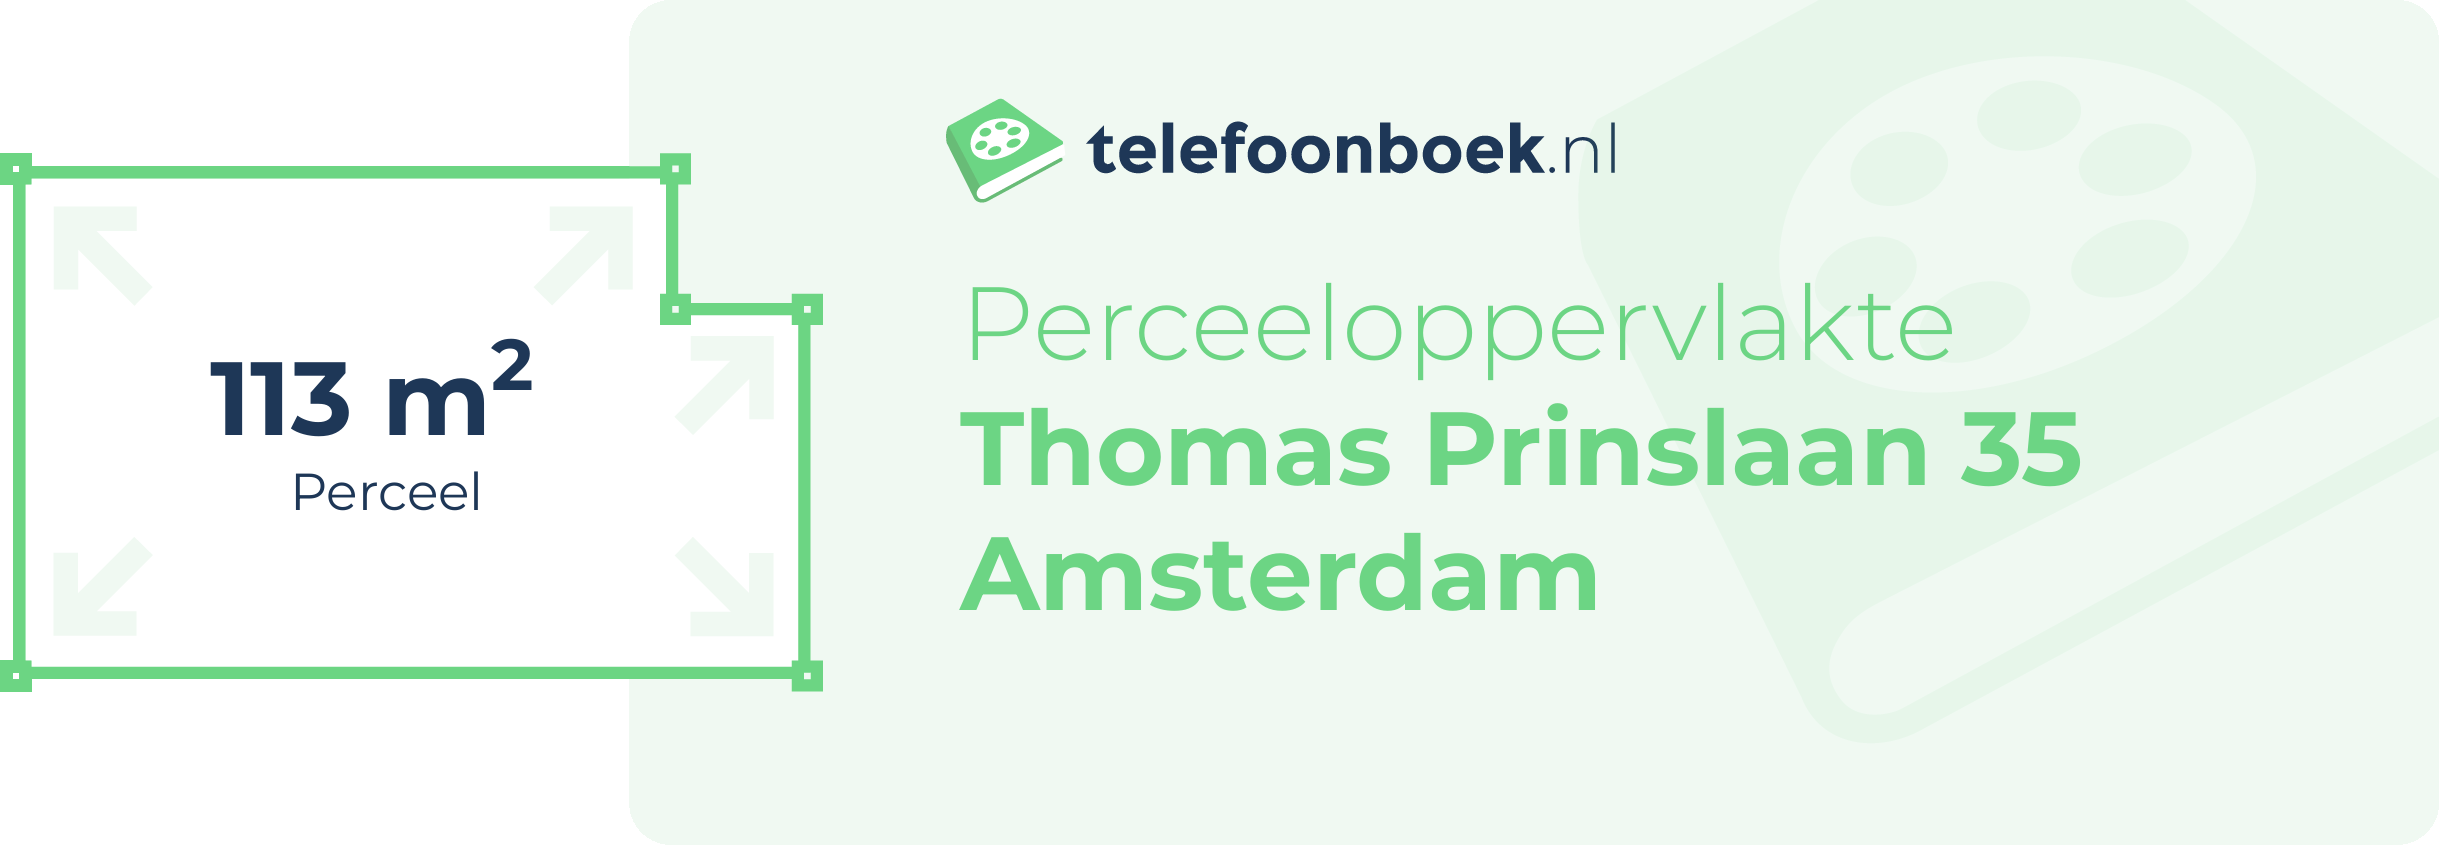 Perceeloppervlakte Thomas Prinslaan 35 Amsterdam